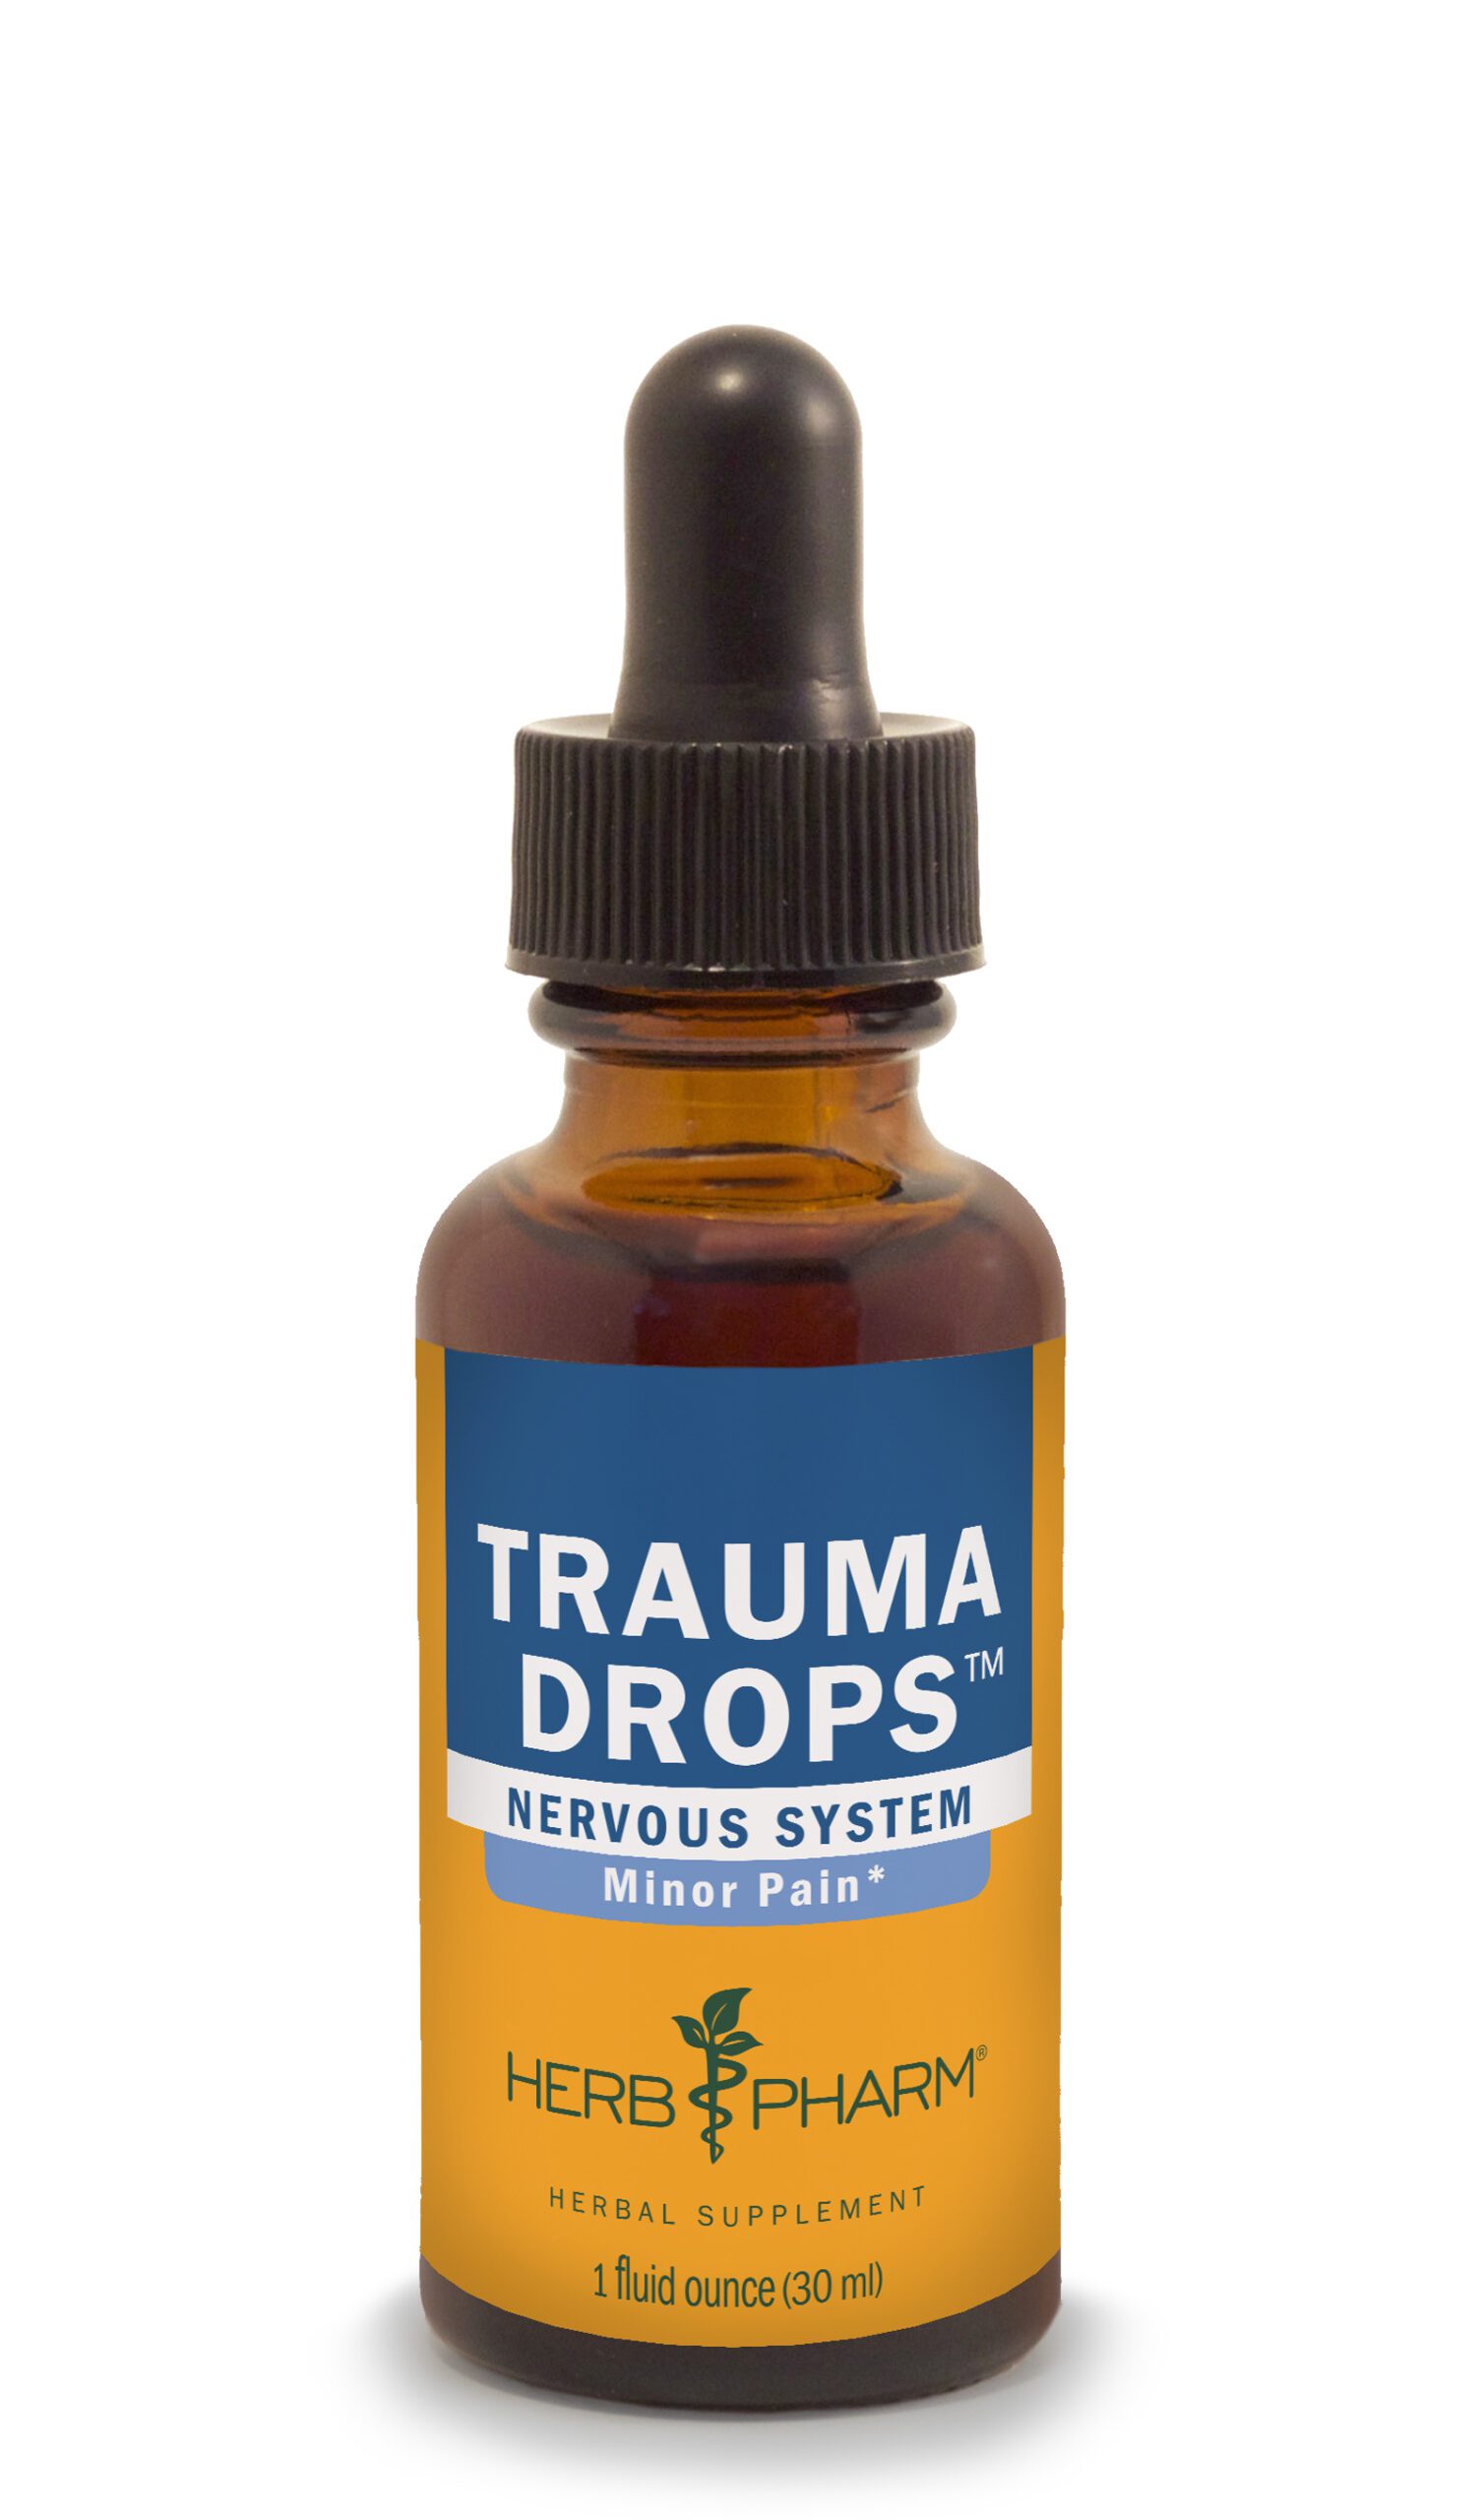 Product Listing Image for Herb Pharm Trauma Drops 1oz